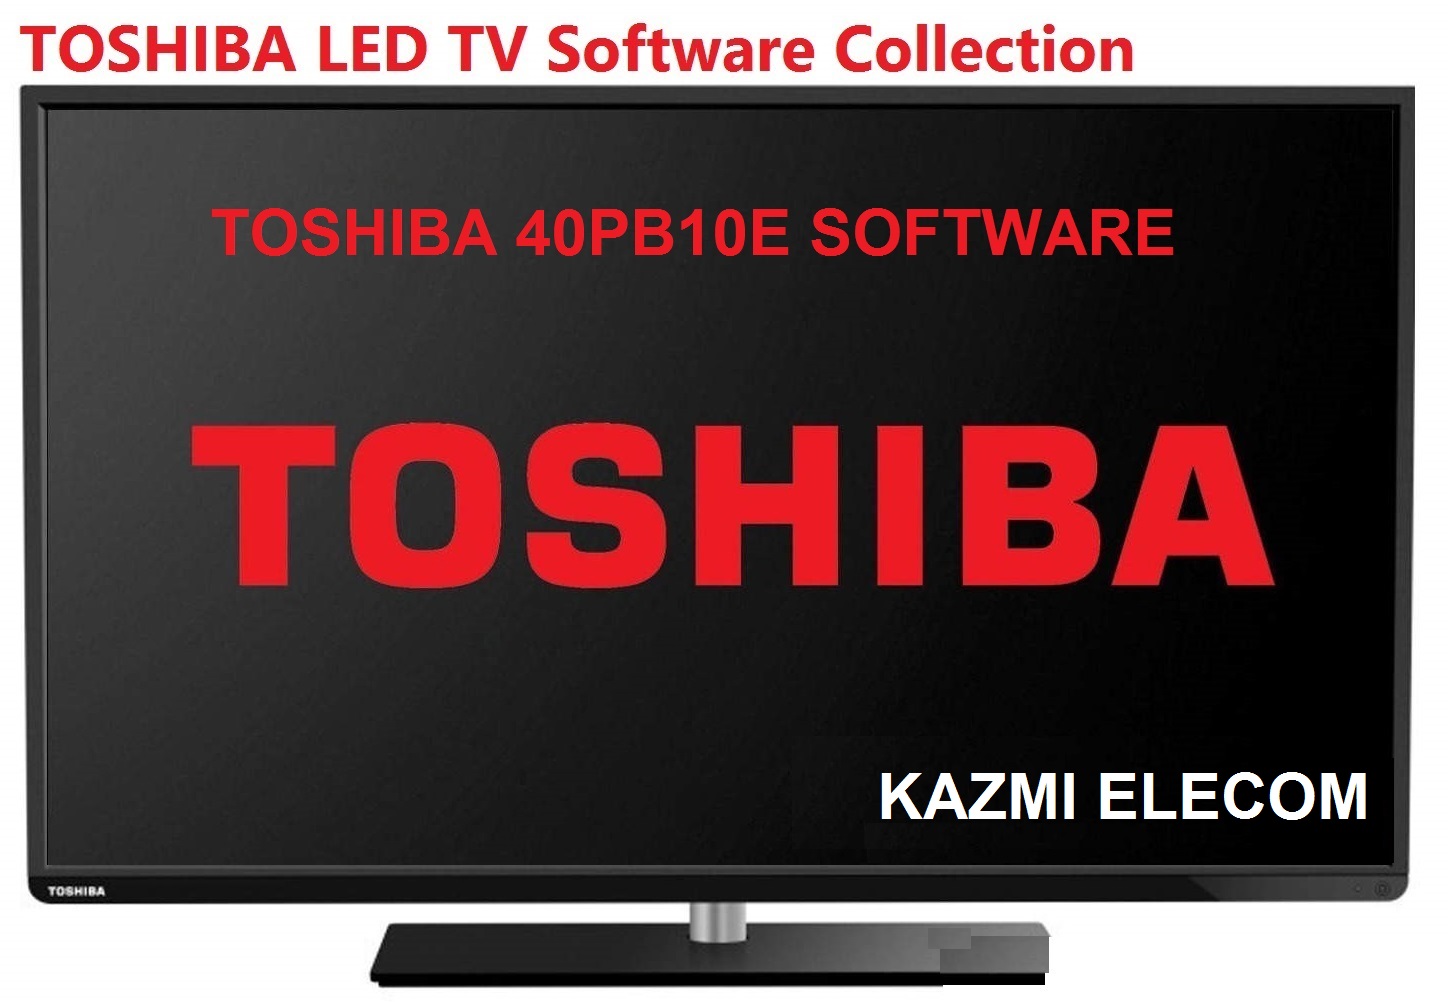 Toshiba 40Pb10E